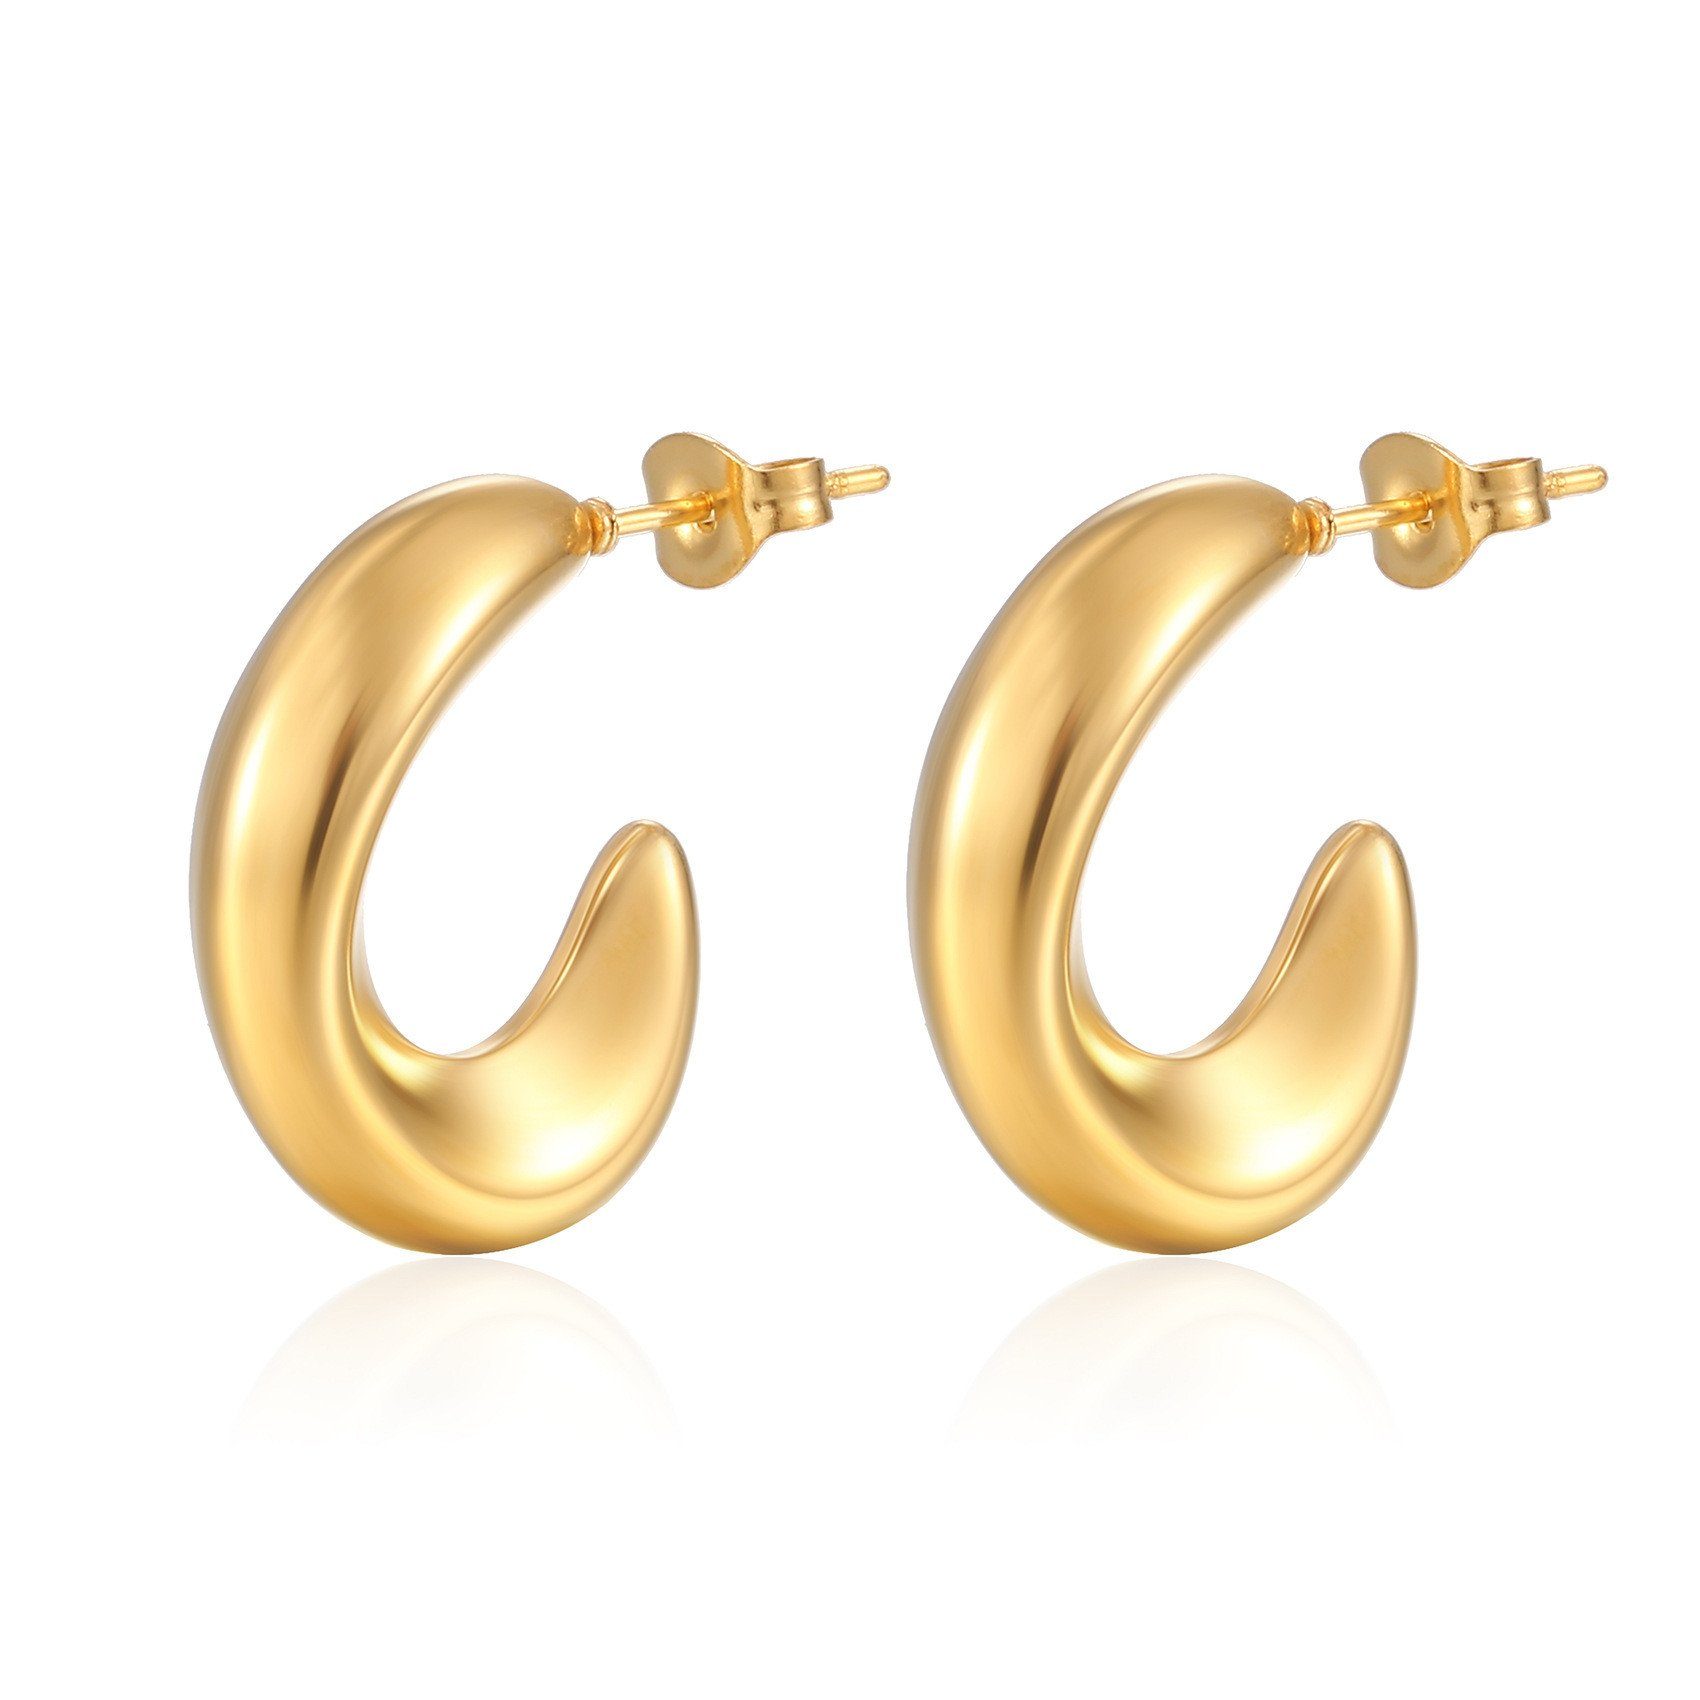 XDeer Paar Creolen Ohrringe,18K Tropfen für Ohrringe, Damen Ohrringe Modisch Leicht Gold/Silber Ohrringe Mädchen